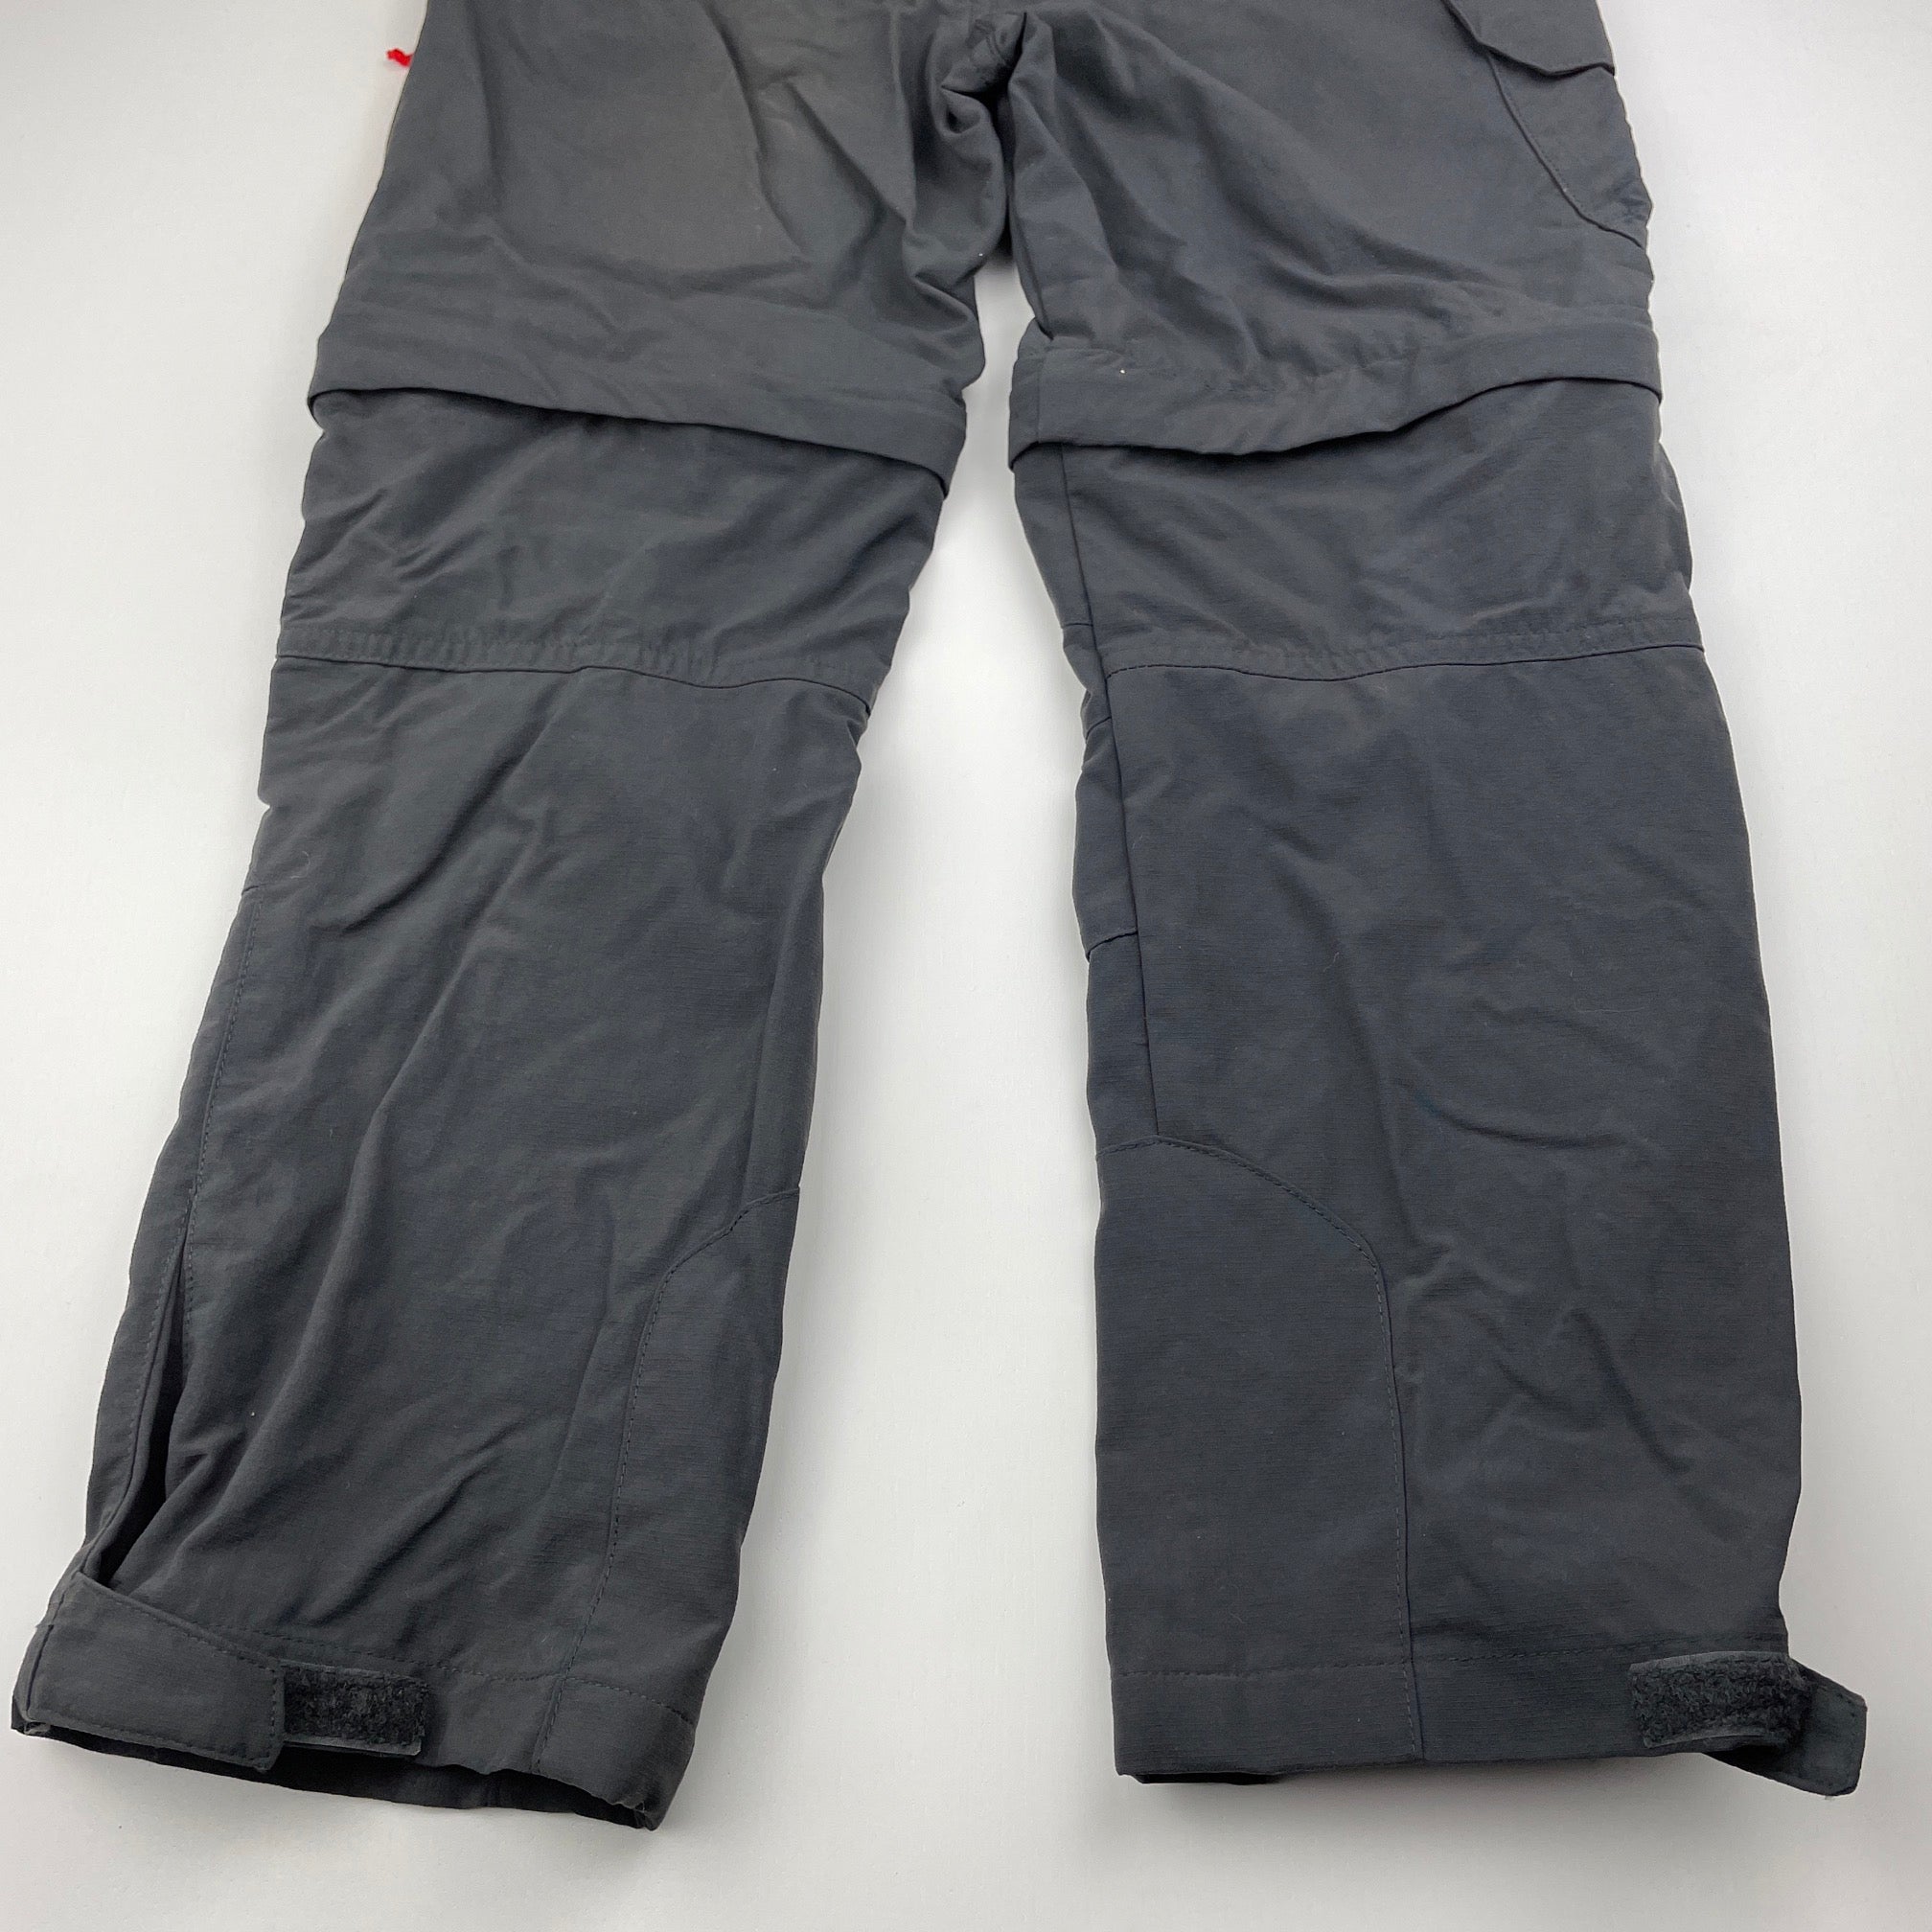 Women's water-repellent trekking trousers - MT900 FORCLAZ | Decathlon